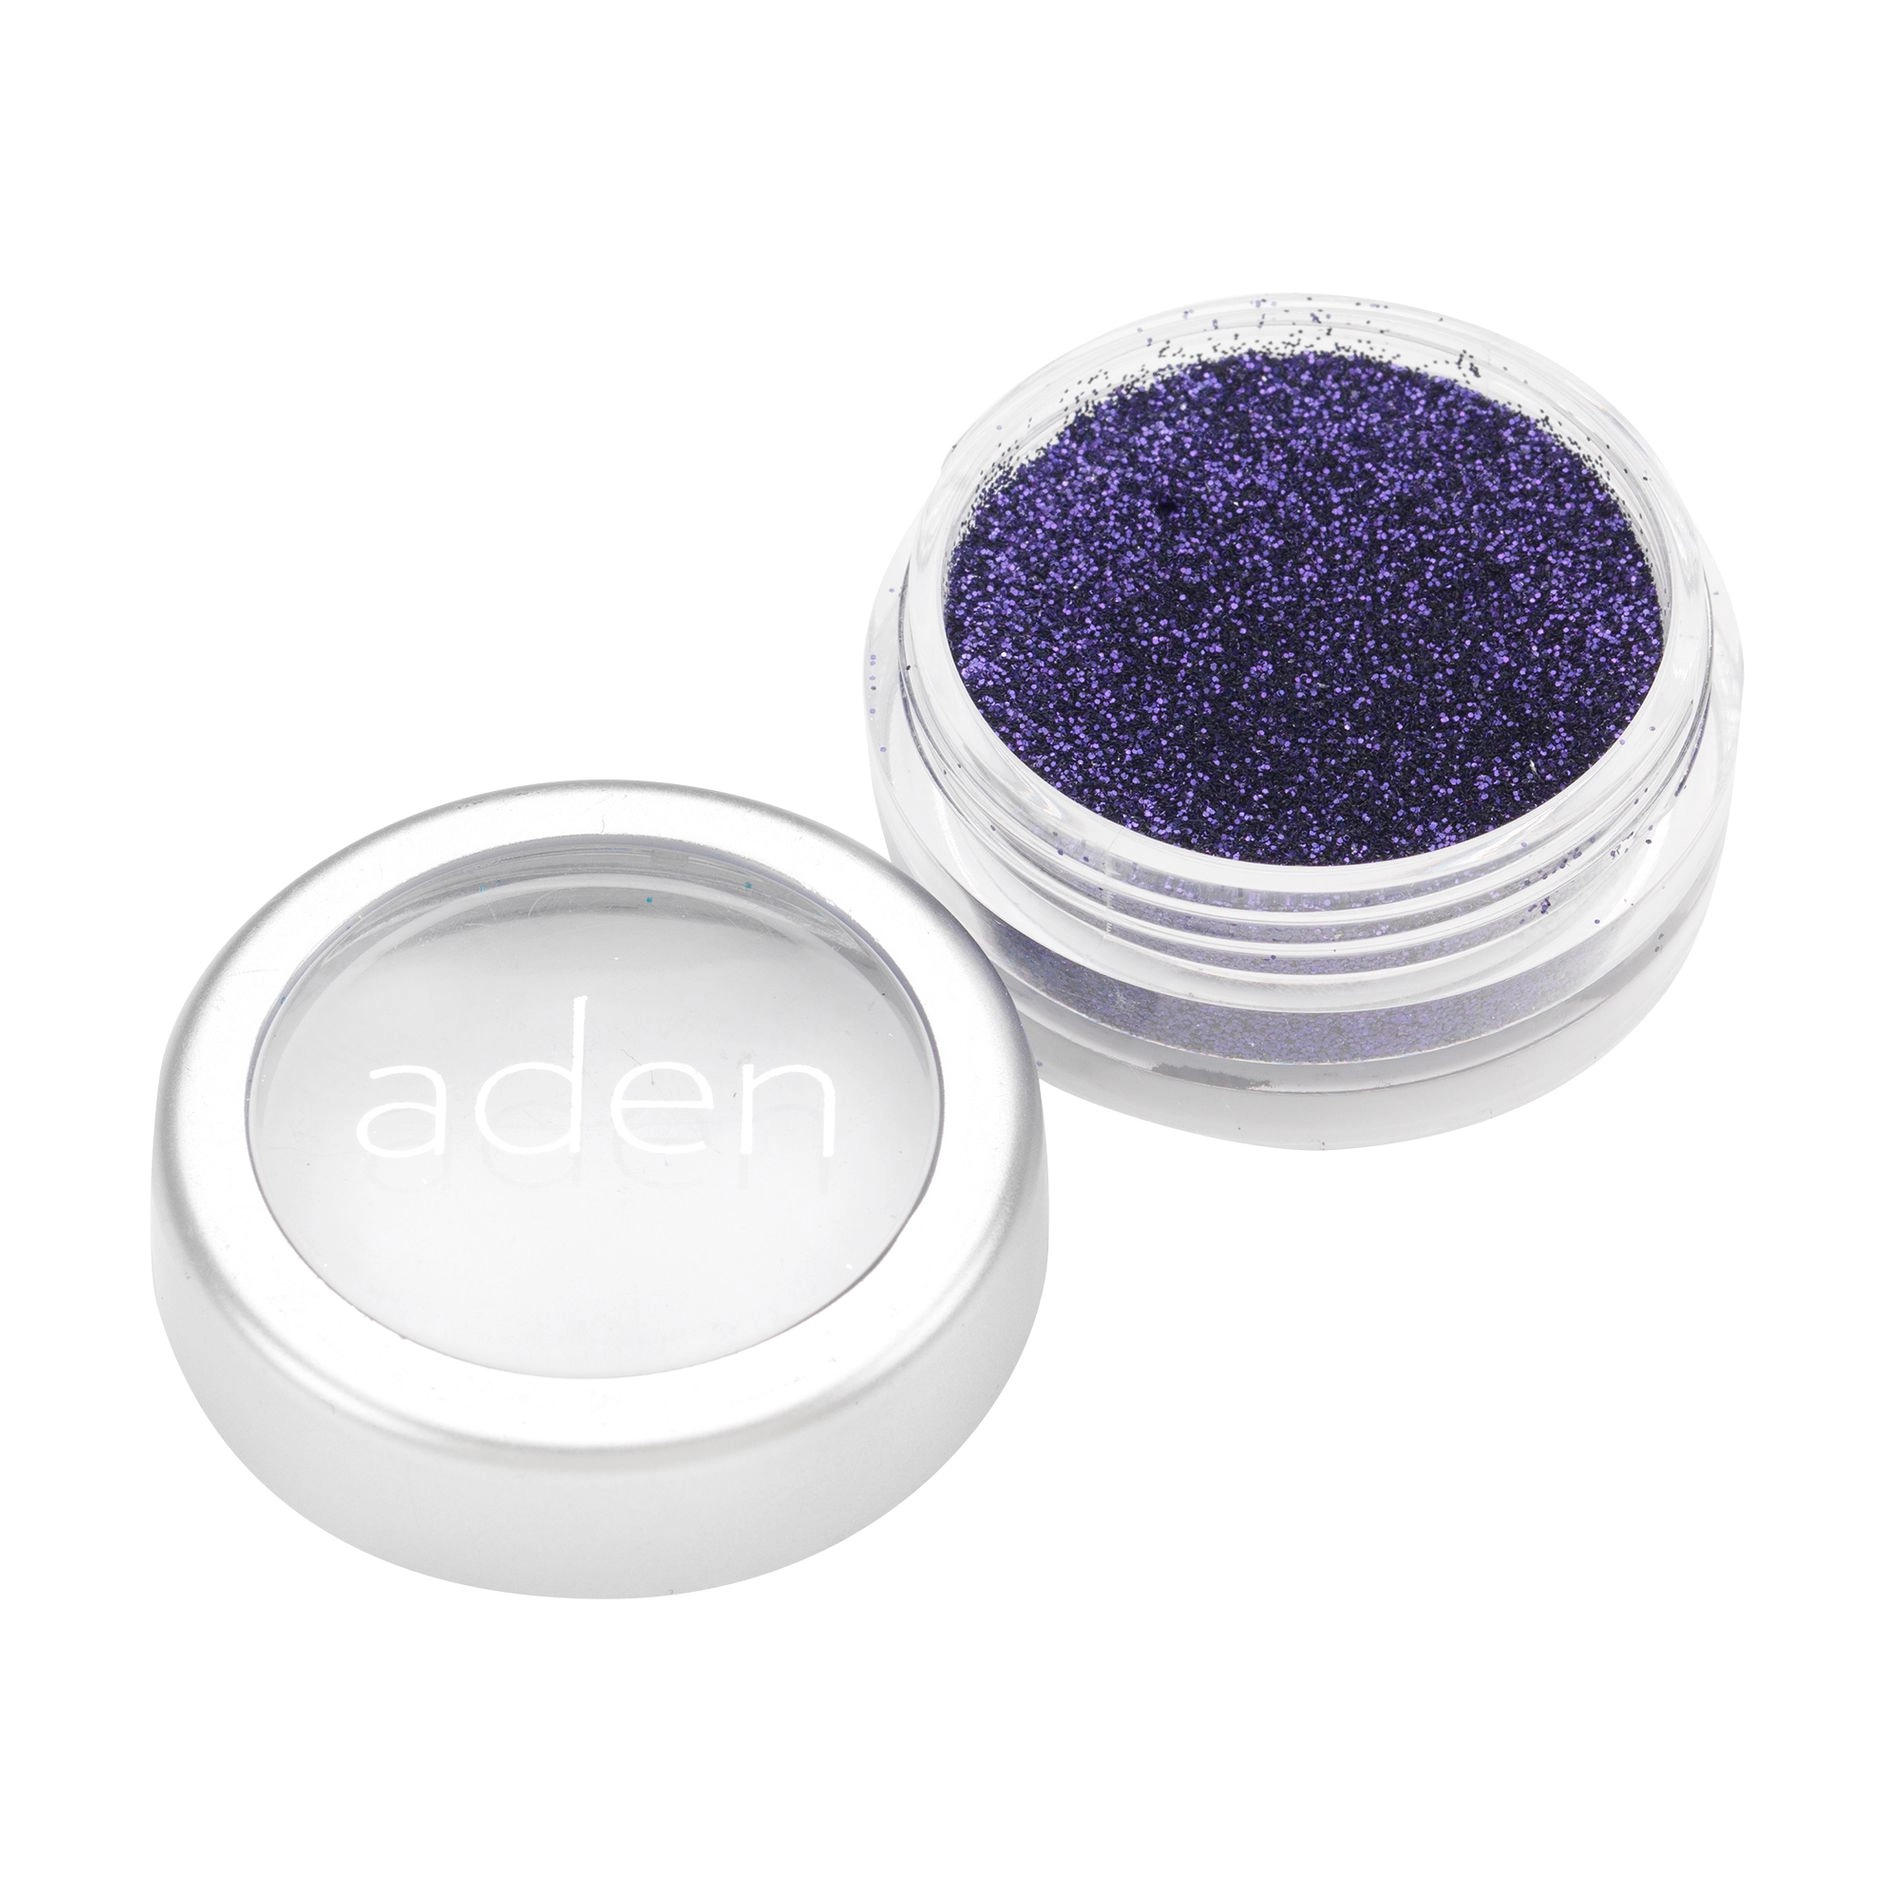 Aden Рассыпчатый глиттер для лица Glitter Powder 18 Misty Blue, 5 г - фото N1